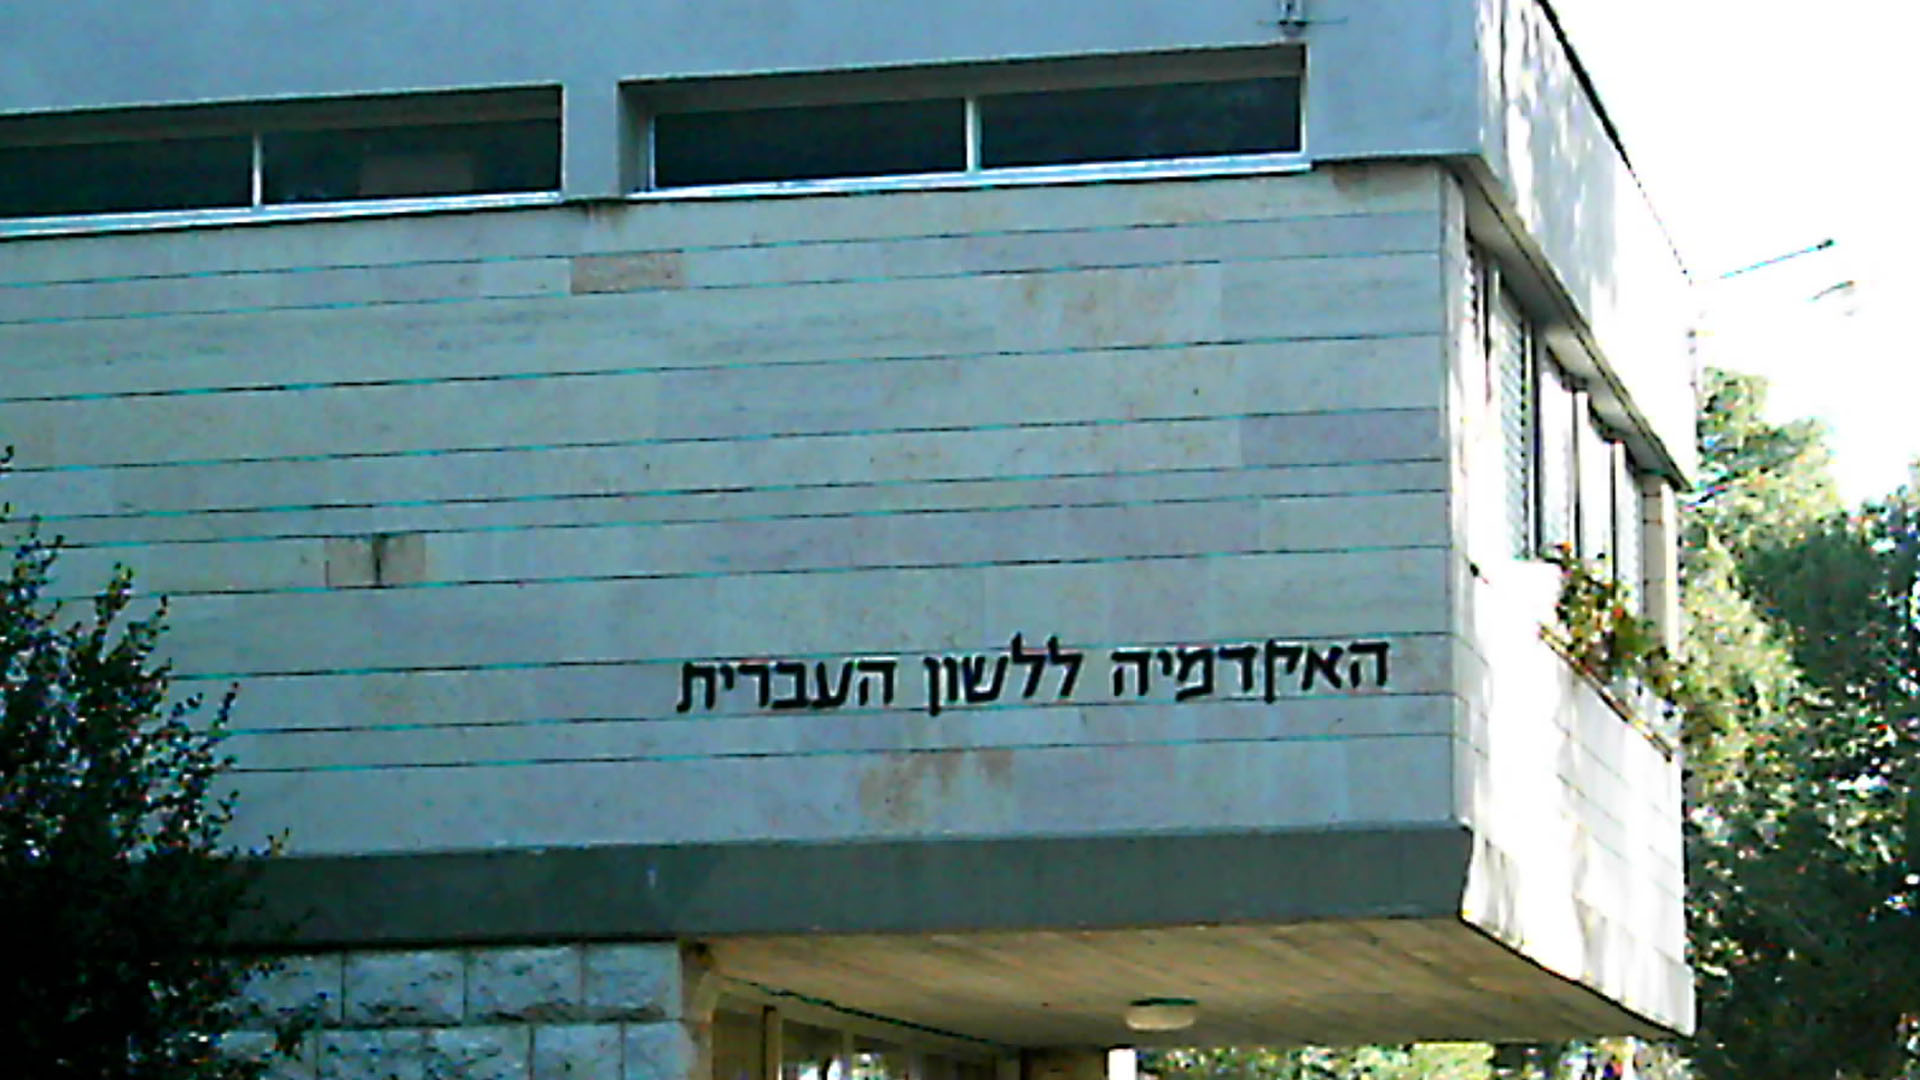 Mit offiziellem Regierungsauftrag: Die Akademie für die hebräische Sprache in Jerusalem